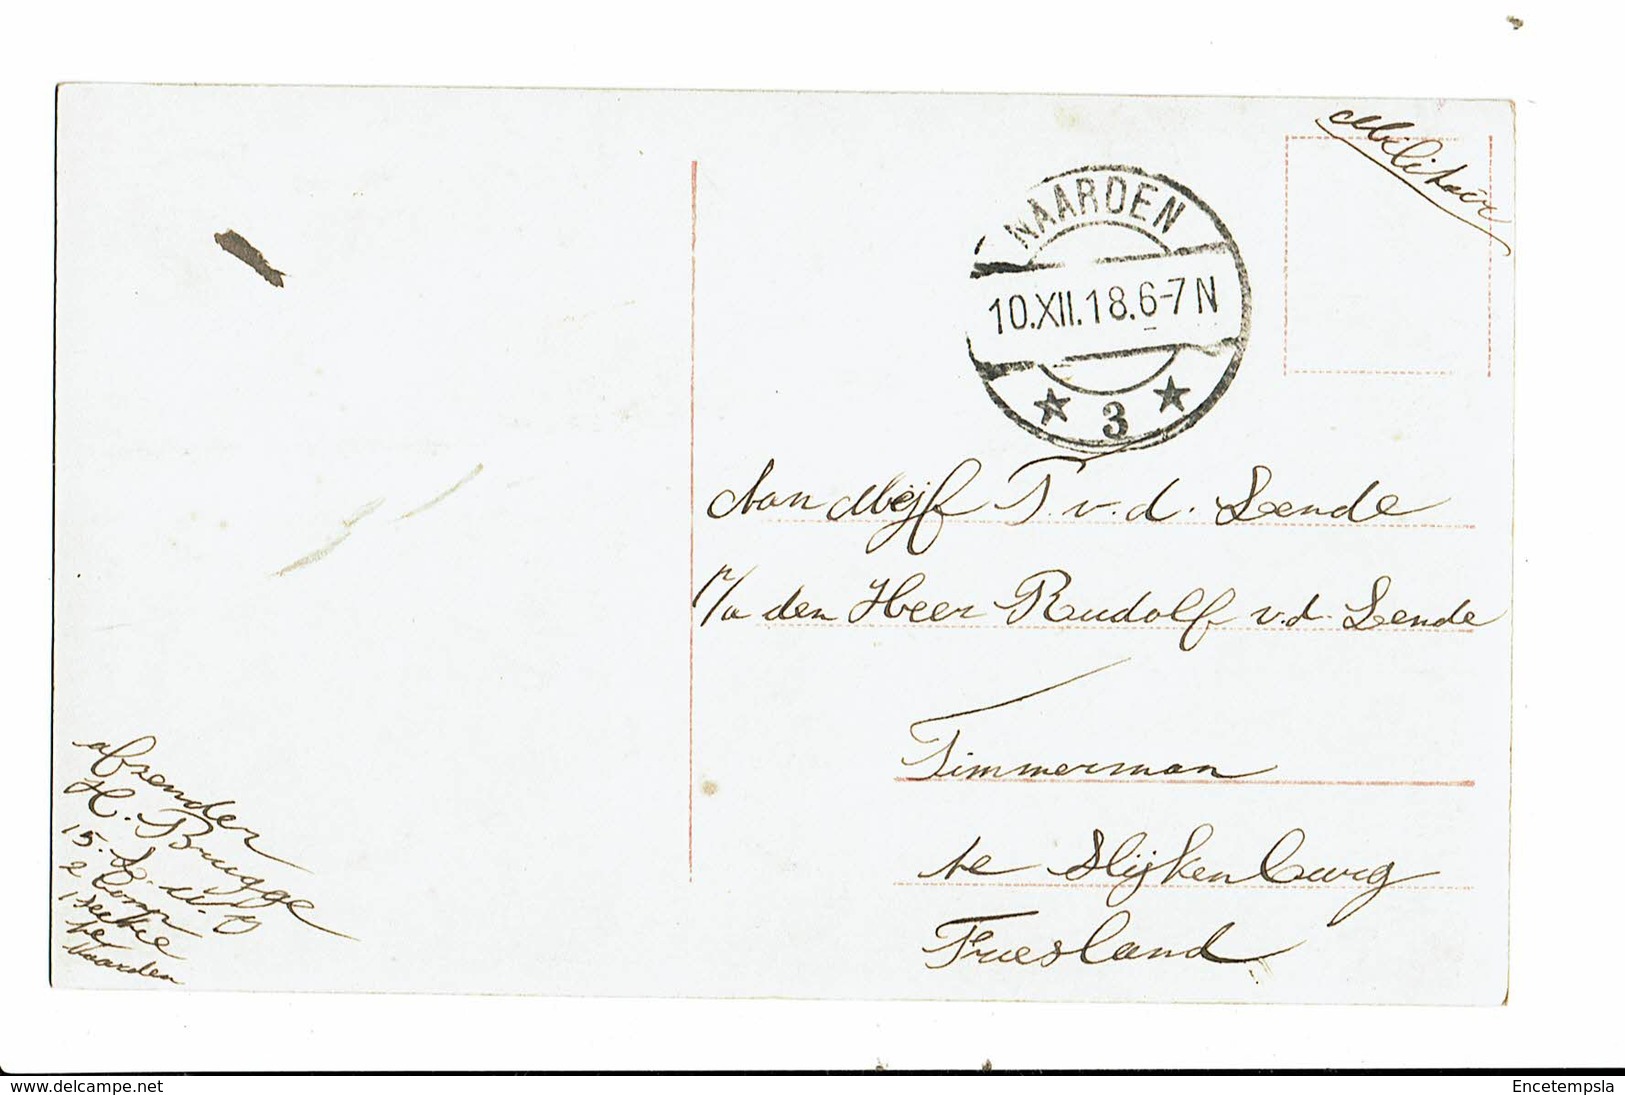 CPA - Carte Postale Pays Bas -  Une Jeune Femme Avec Un Chapeau Conique -1918-VM4013 - Vrouwen